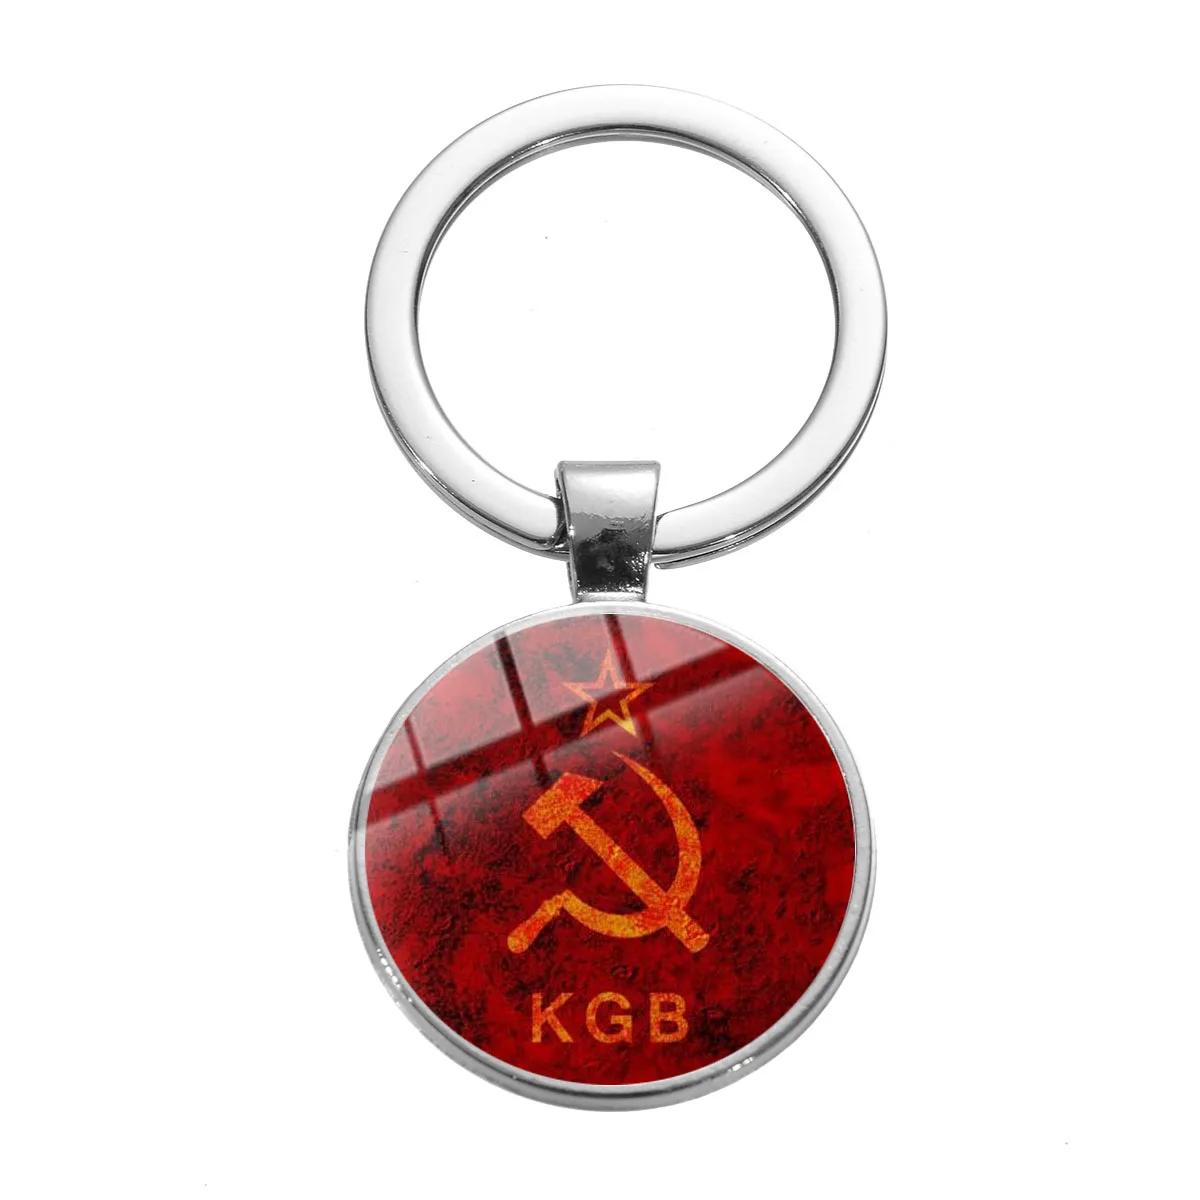 SONGDA высокое качество СССР CCCP советский брелок серповидный молоток Россия эмблема коммунизма знак стеклянный камень металлический кулон брелок держатель - Цвет: Style 7